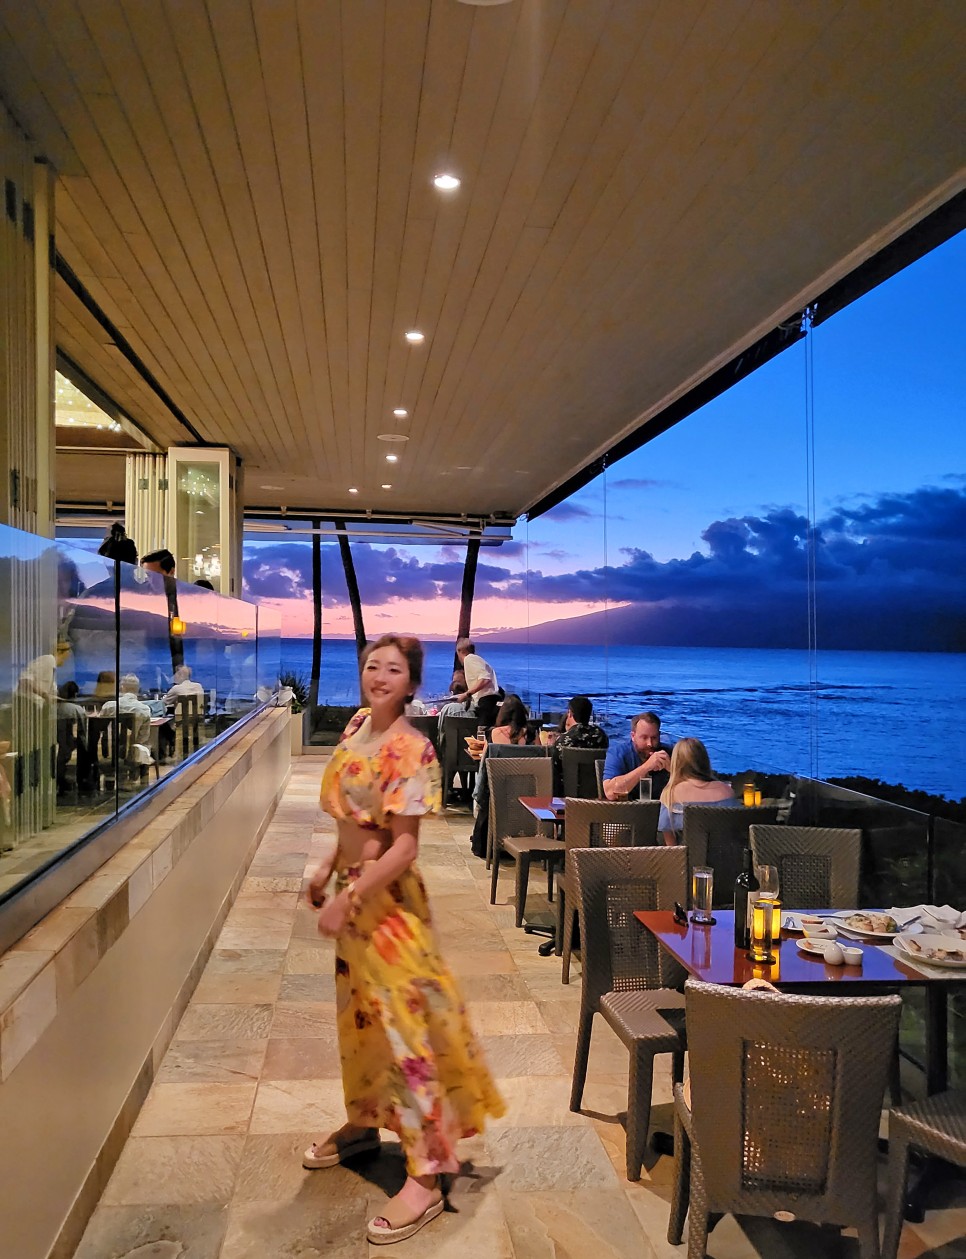 익스피디아 2월 할인코드+하와이 가성비 호텔 특별한 숙소를 소개해요